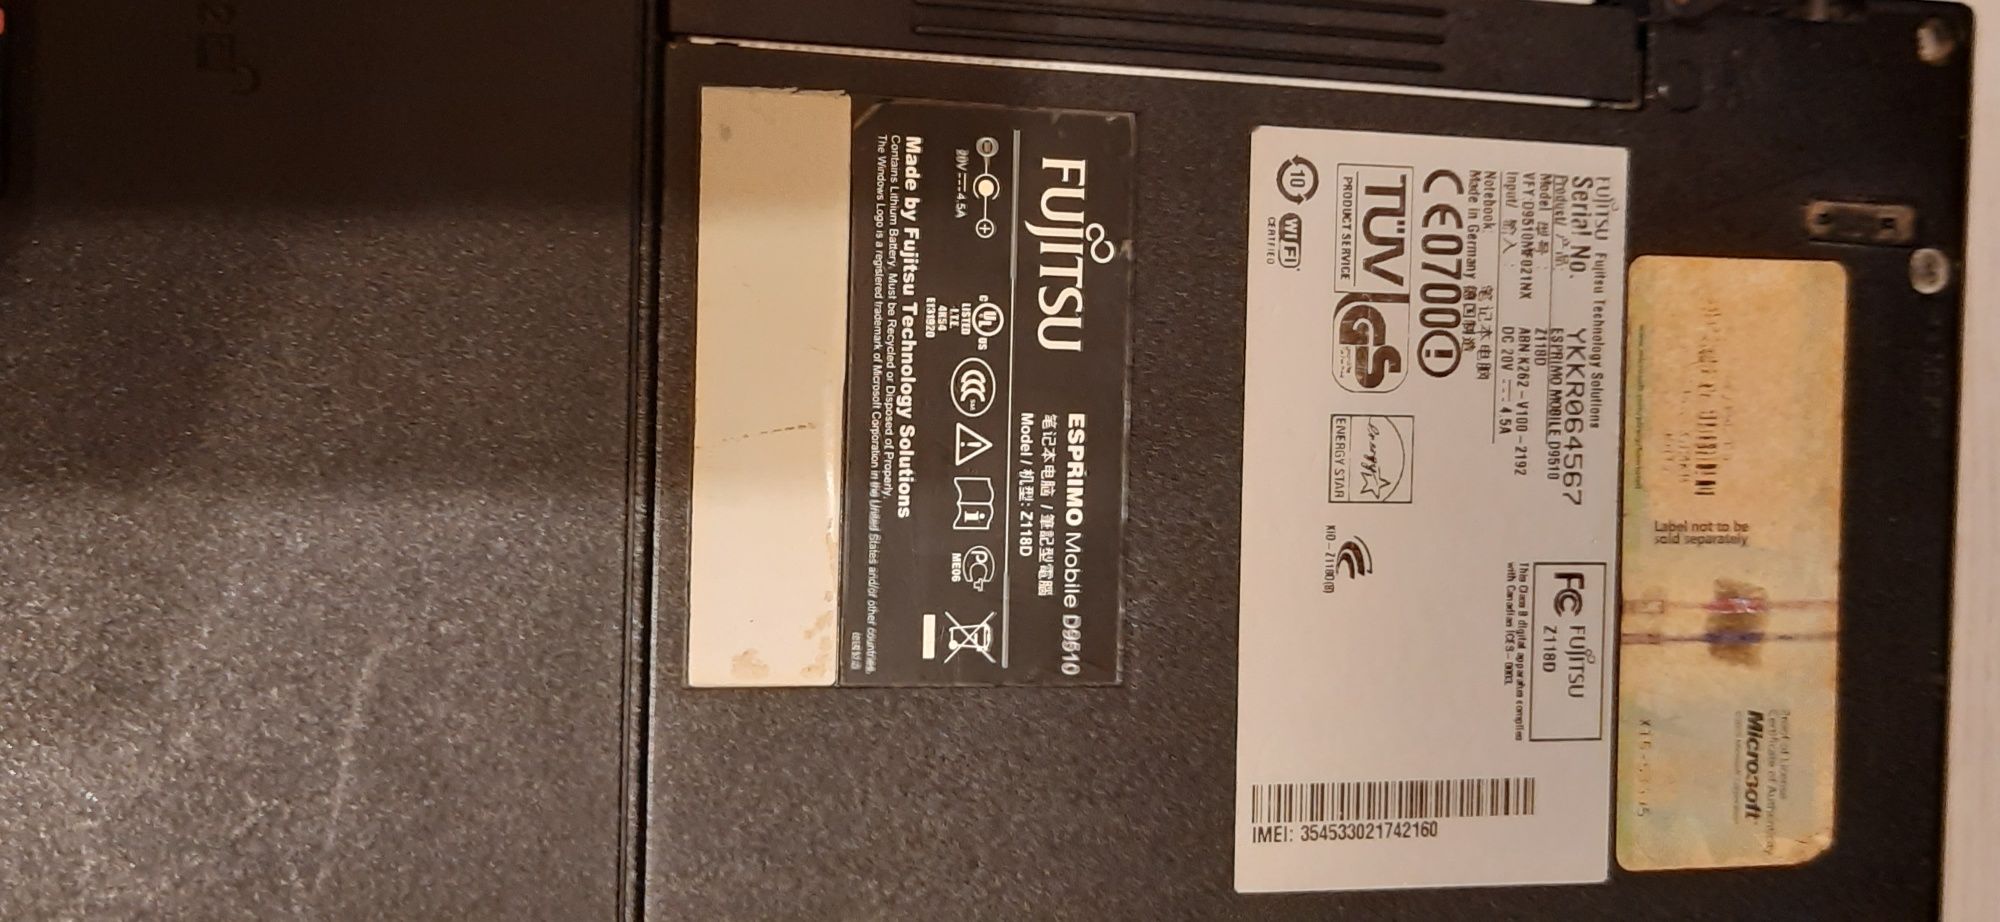 Laptop Fujitsu 2x2.00Gh, 4.0 GB RAM, HDD 320 GB